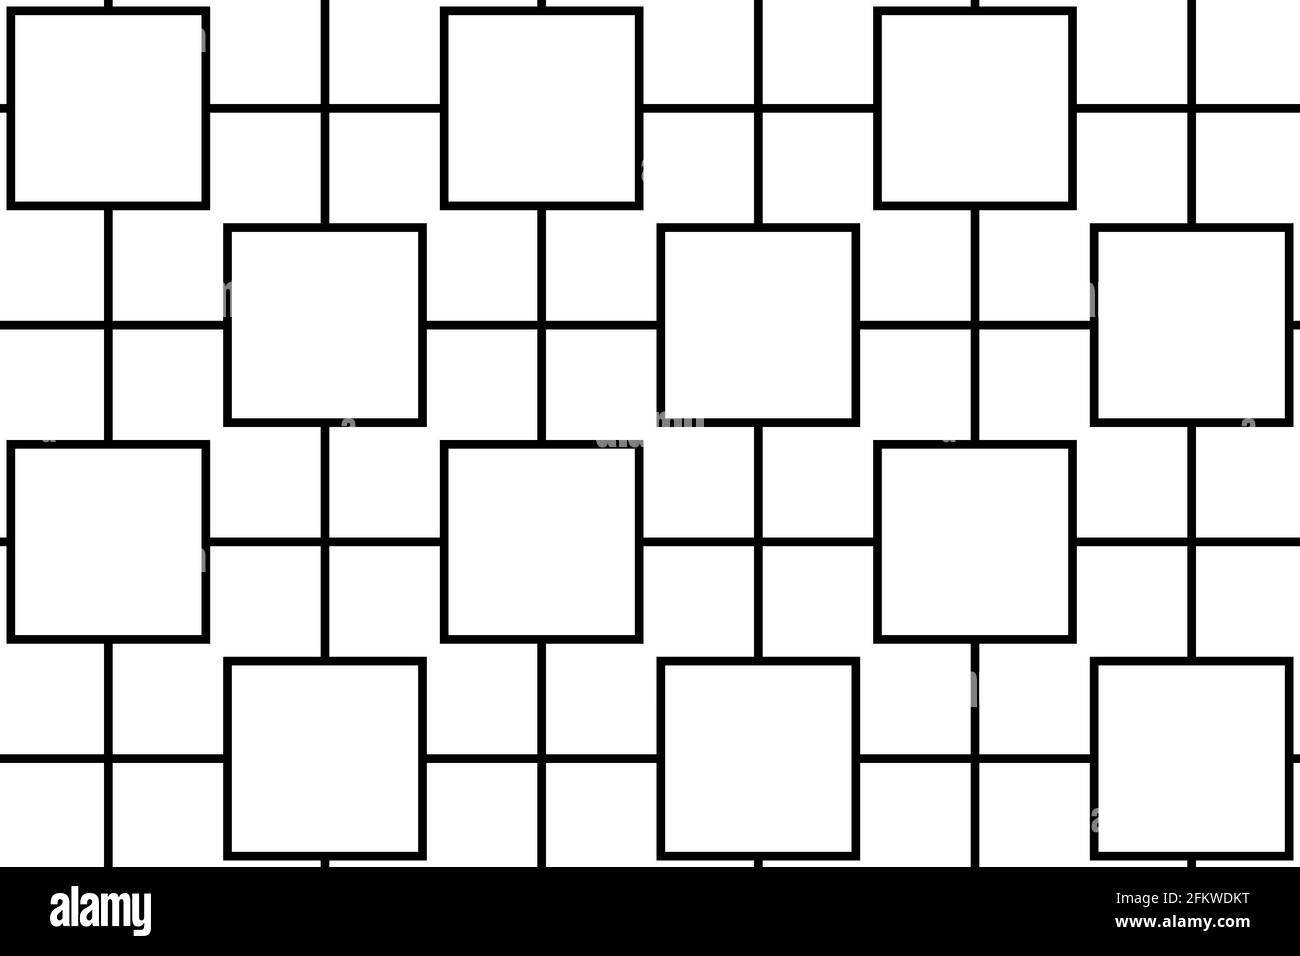 linea nera in stile contemporaneo, isolata su sfondo bianco. Foto Stock